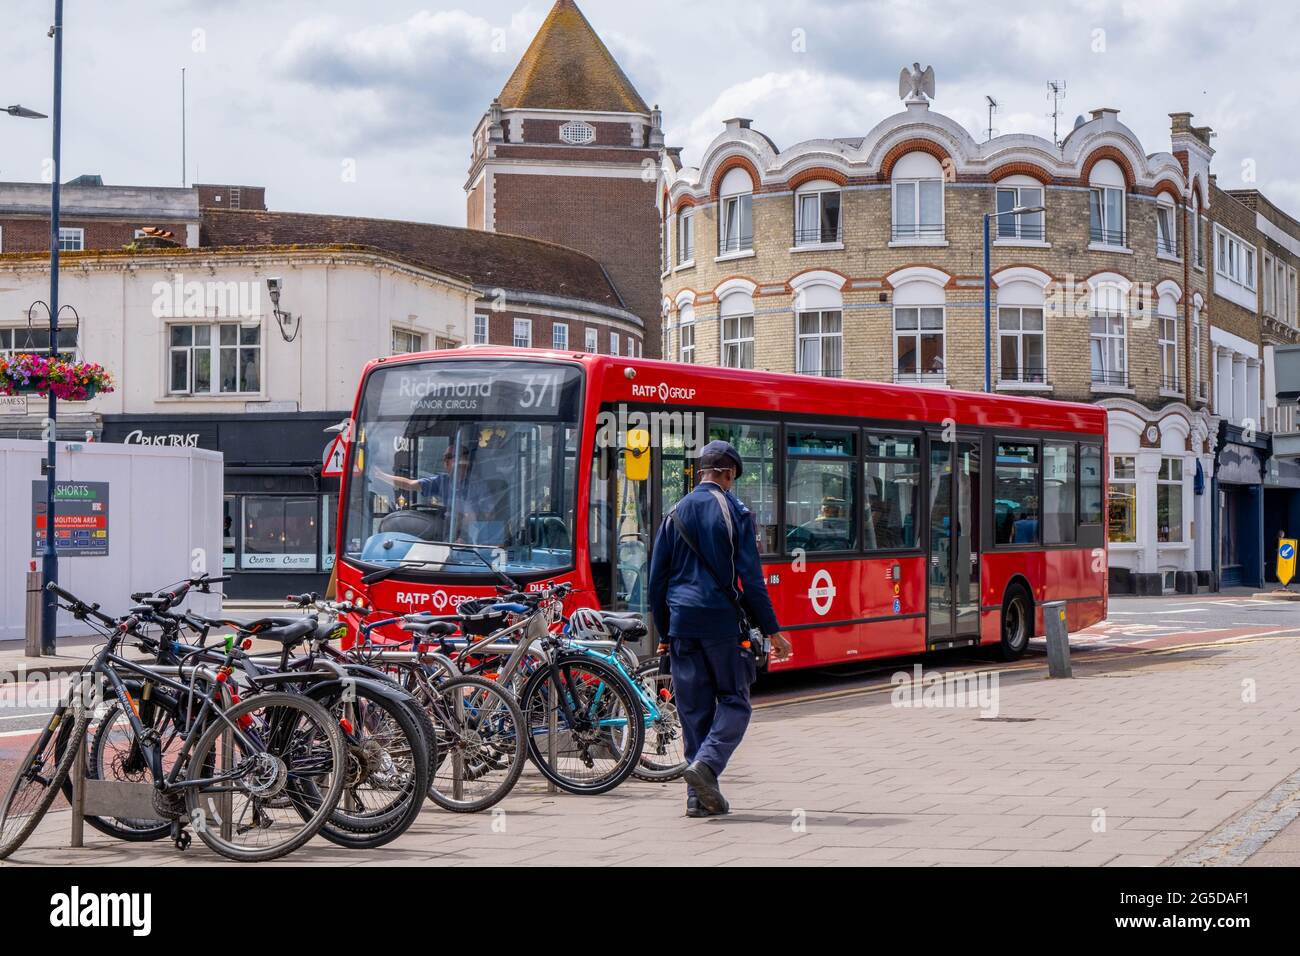 Kingston London, Royaume-Uni, juin 26 2021, Homme passant devant UNE rangée de bicyclettes garées et UN bus de transport public à un seul Decker Red Banque D'Images